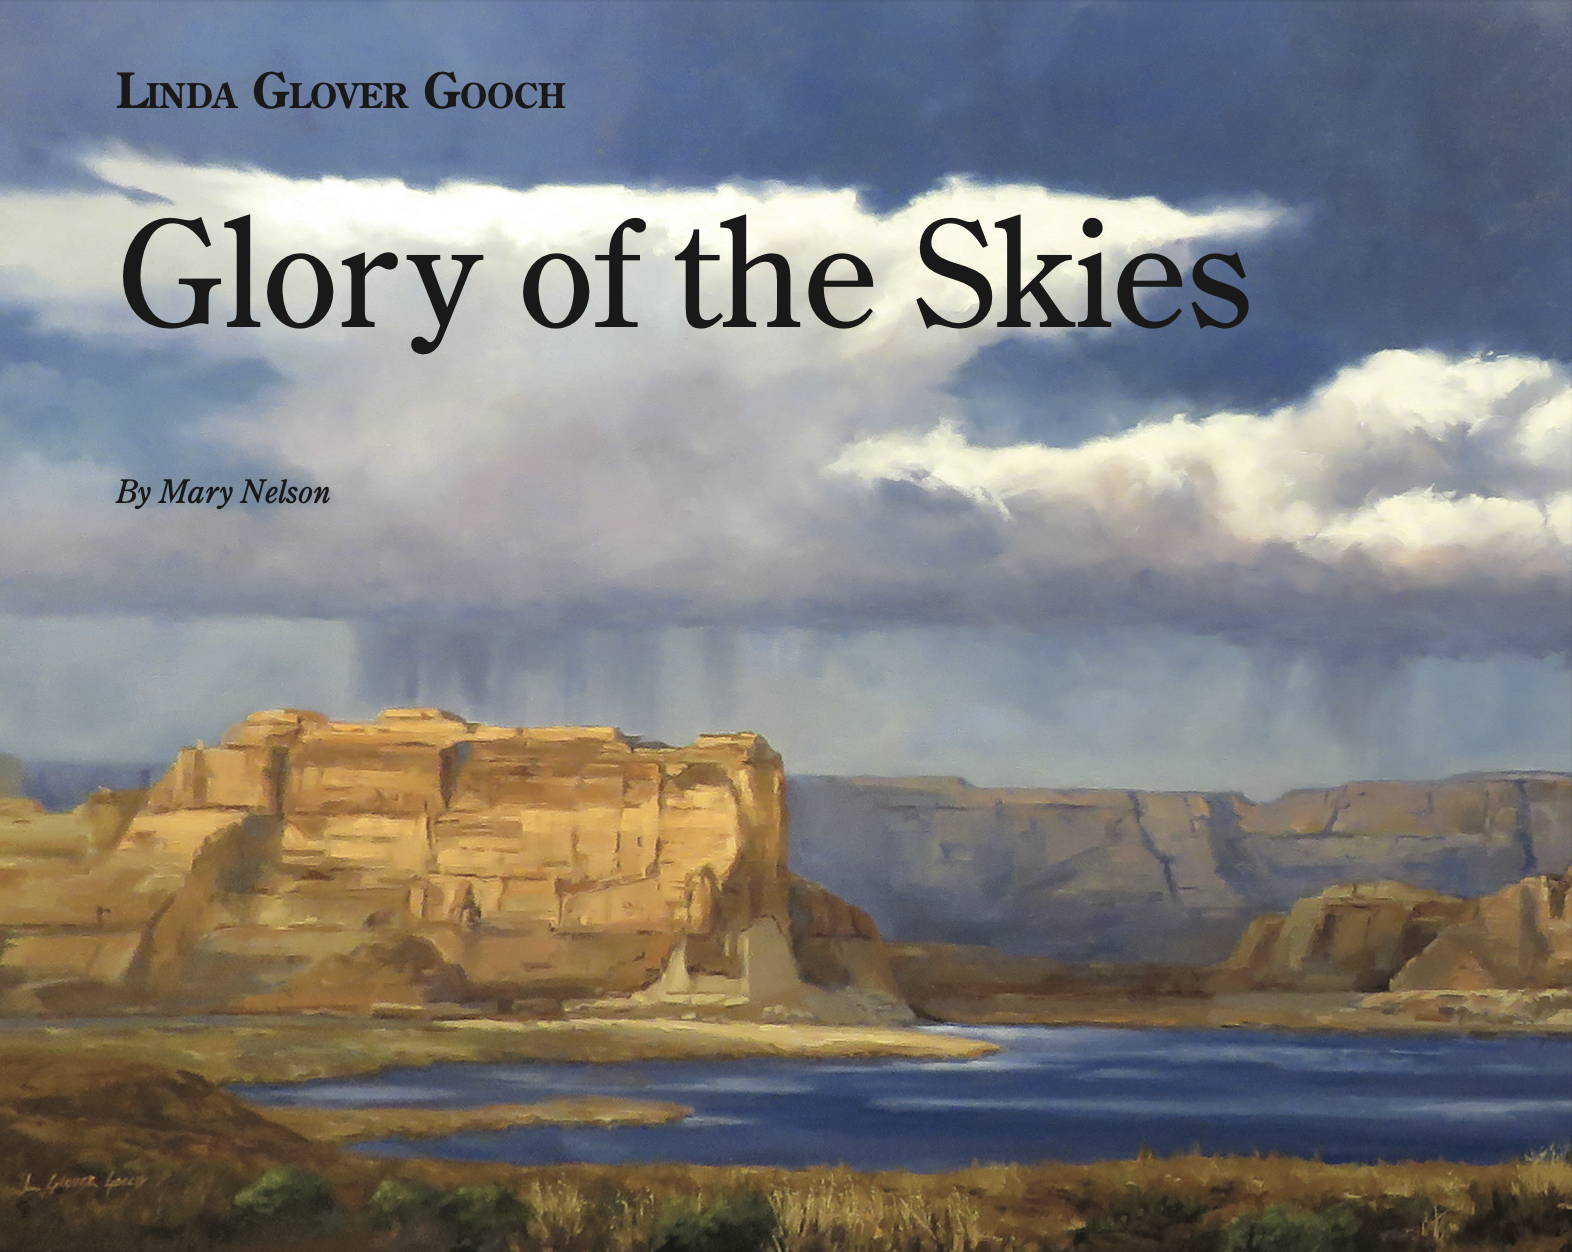 Linda Glover Gooch. Sorrel Sky Gallery. David Yarrow. Santa Fe Art Gallery.